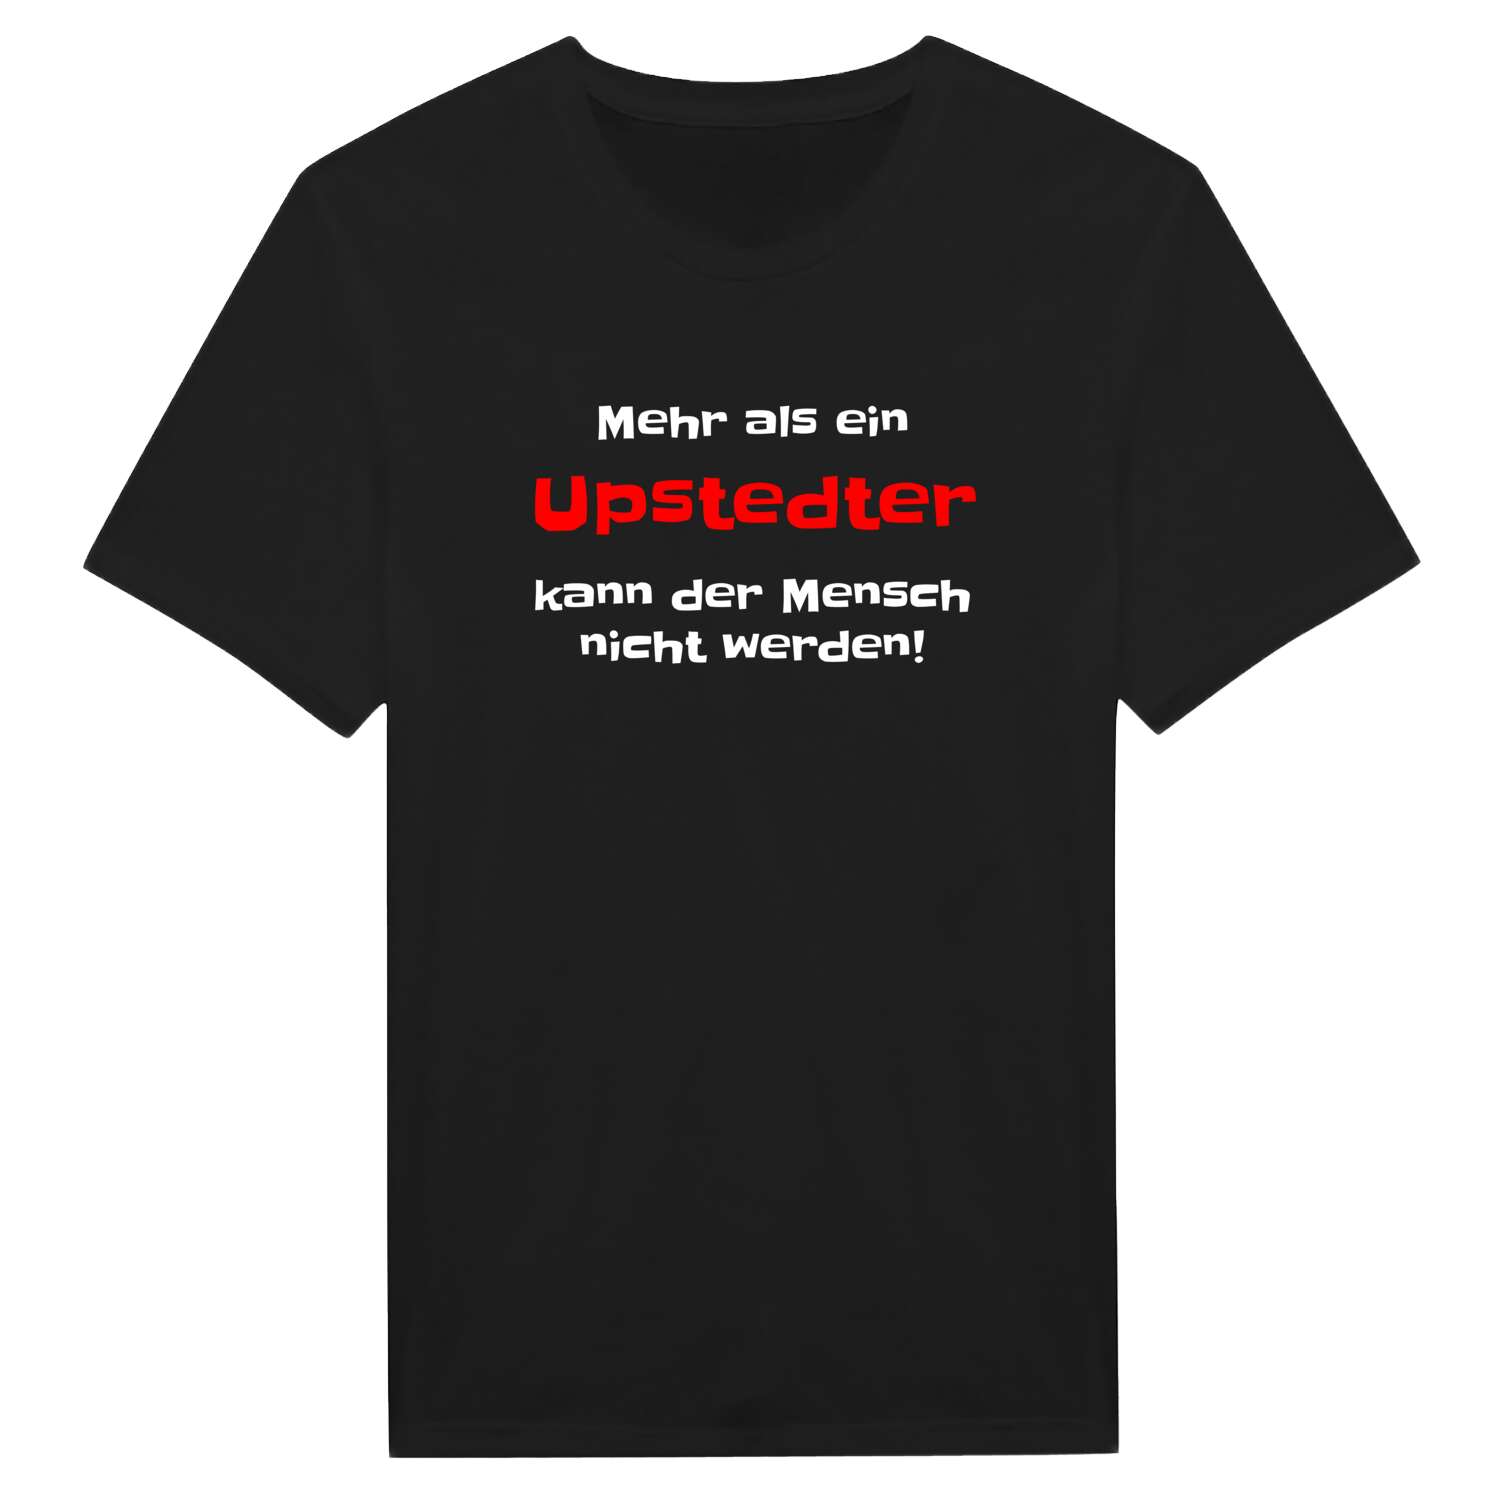 Upstedt T-Shirt »Mehr als ein«